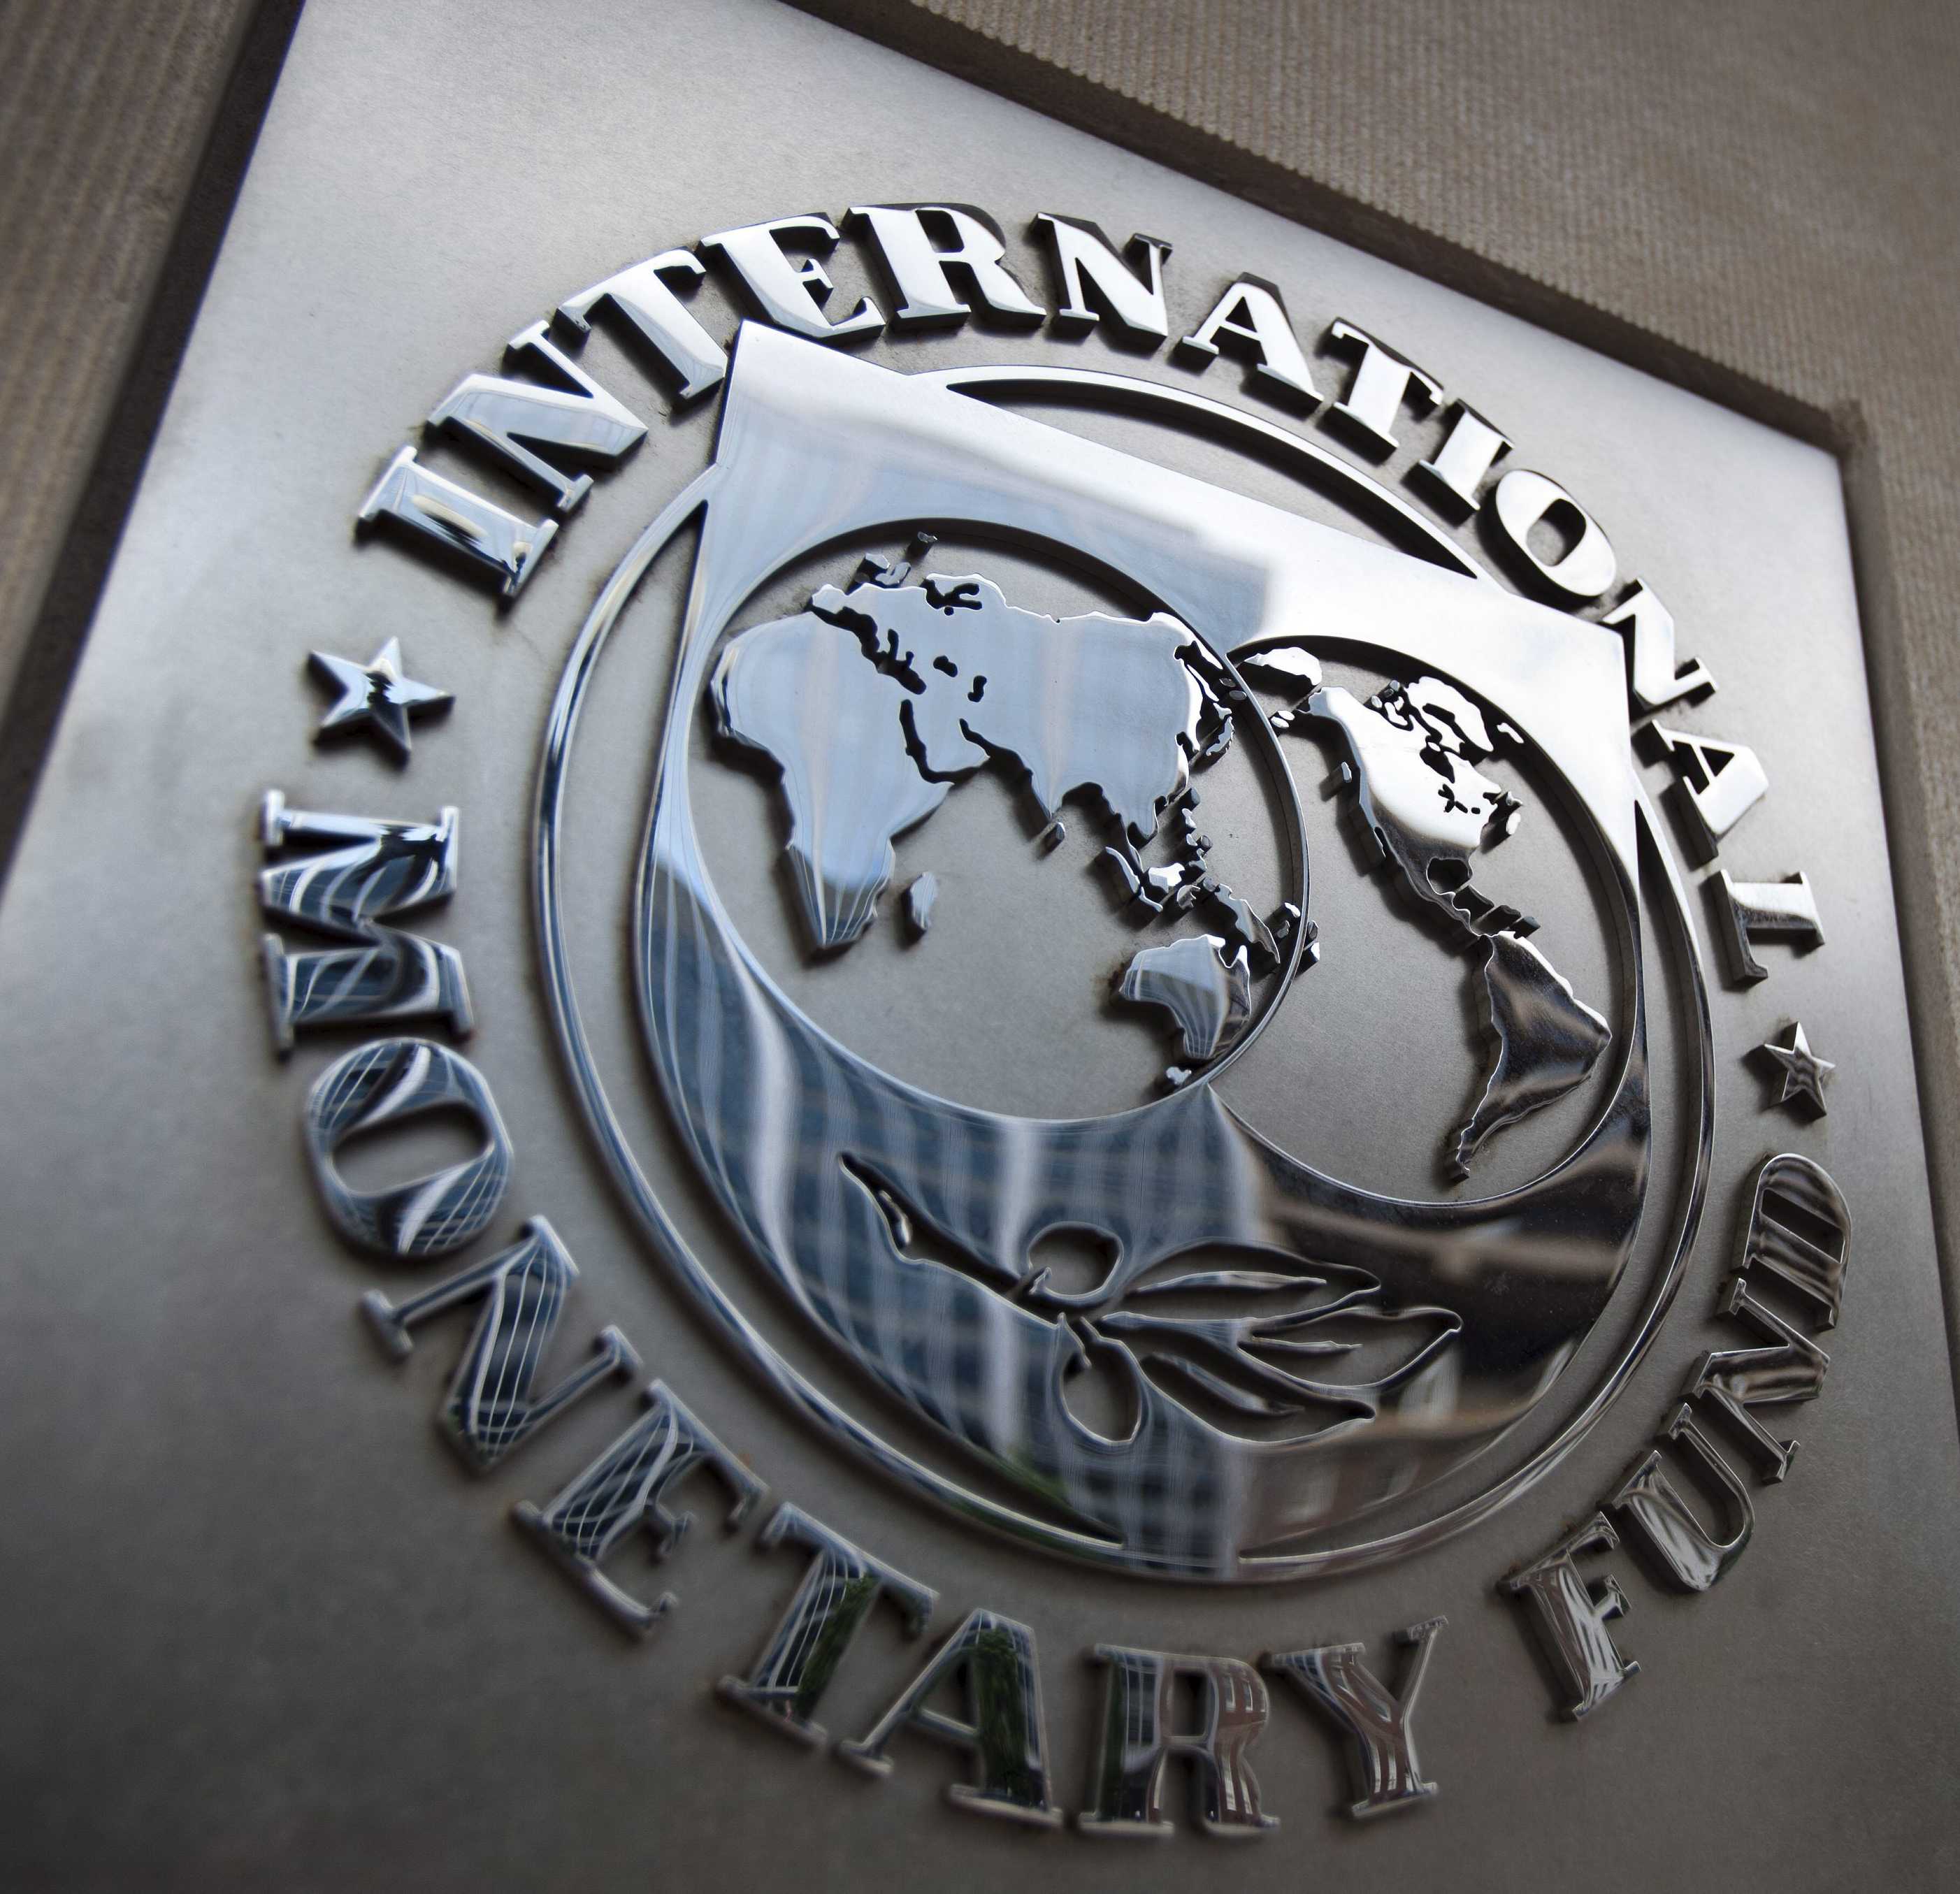 SENEGAL: Le Fmi encourage le gouvernement à fermer 16 agences et à fusionner huit autres en Trois agences